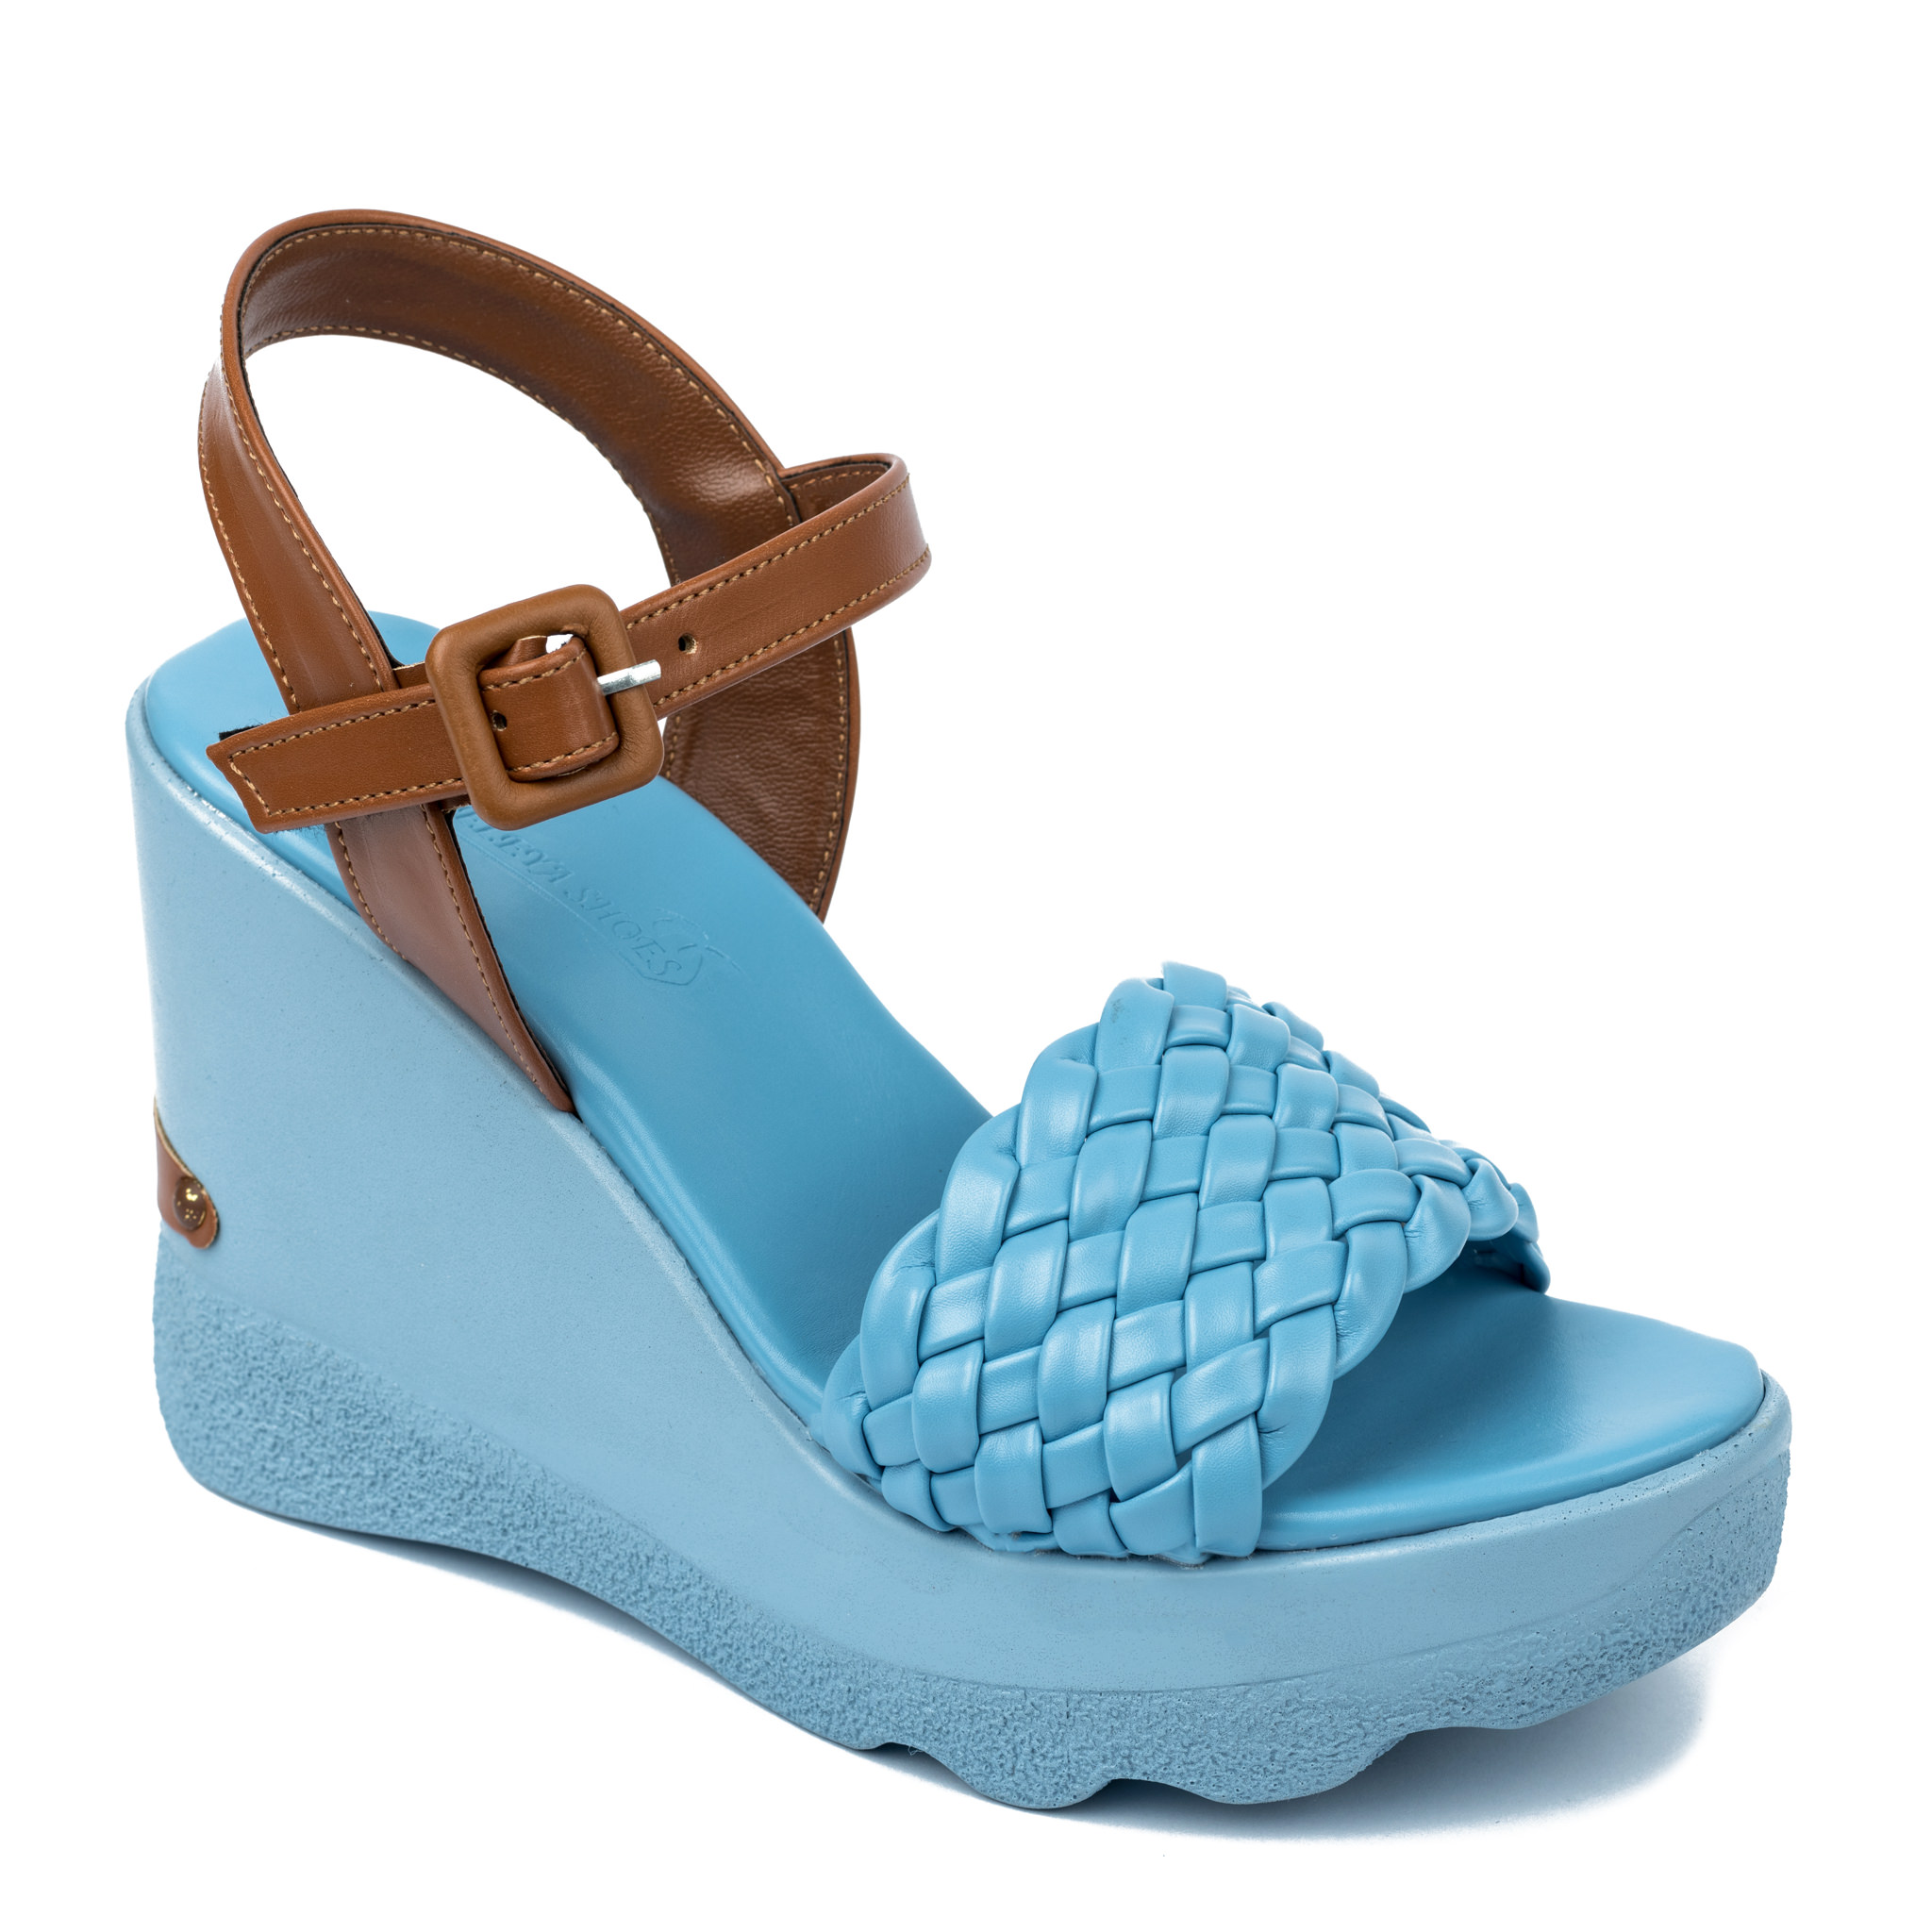 Women sandals A324 - BLUE